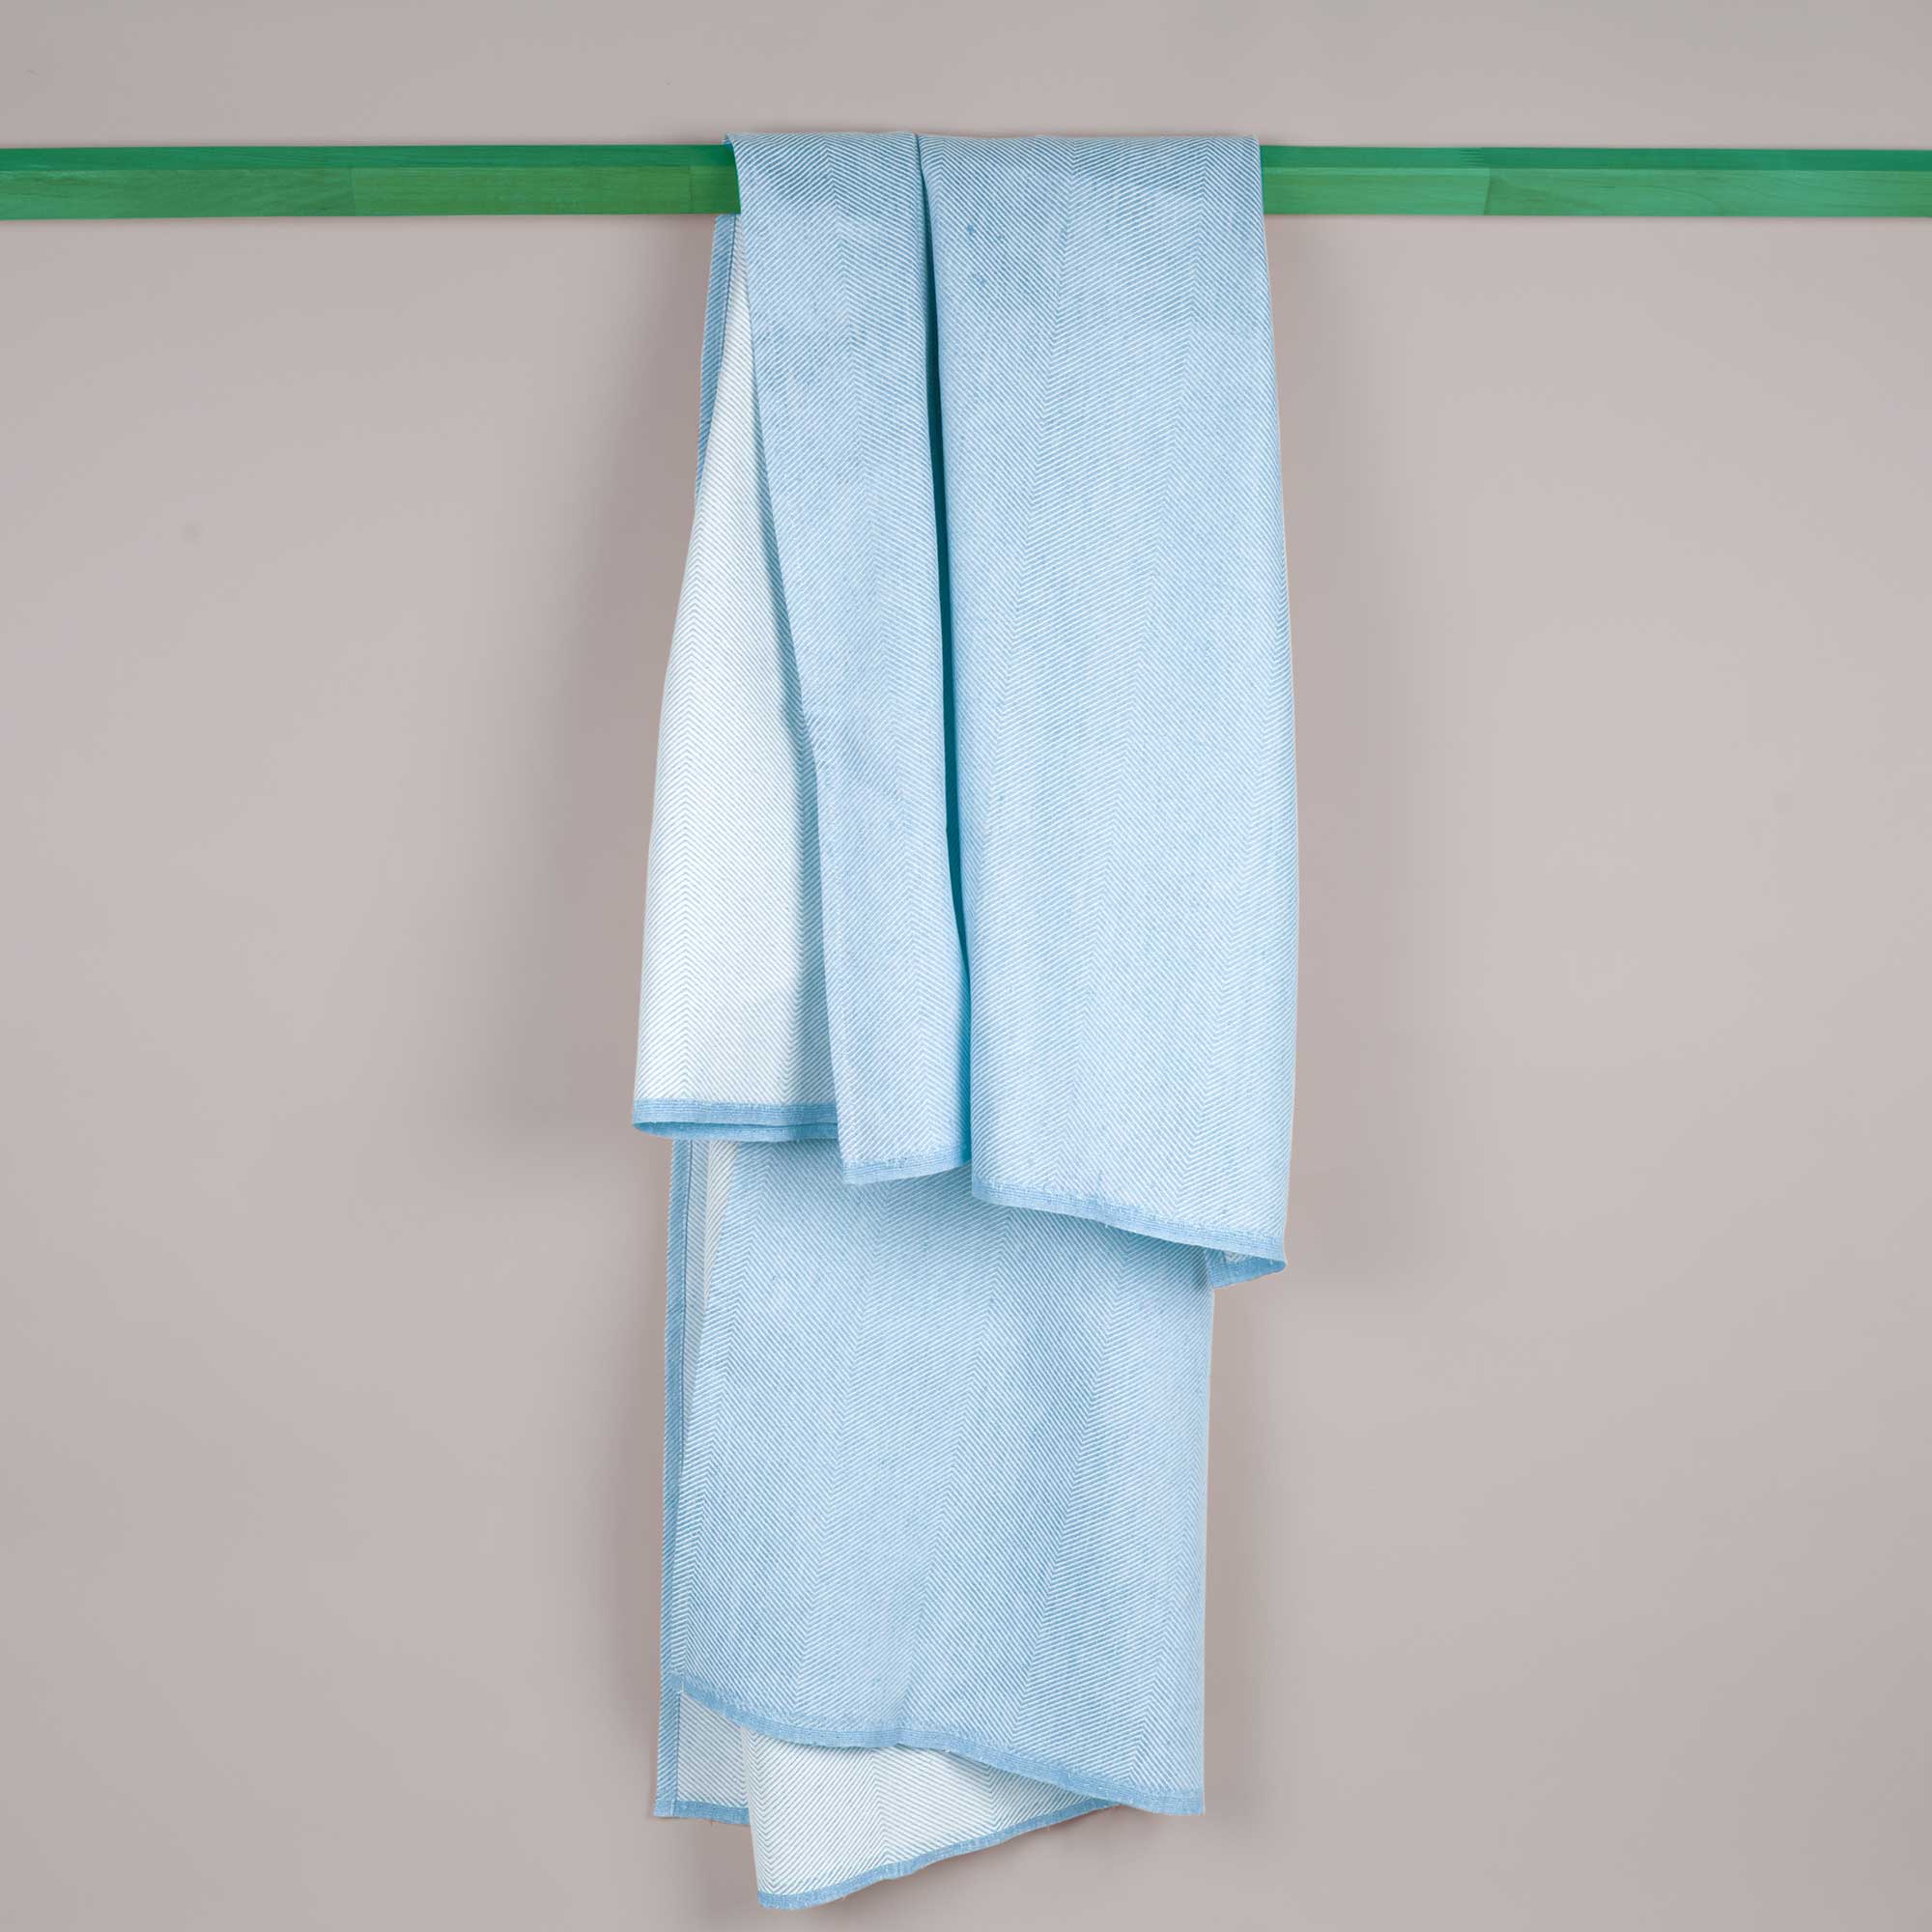 Badehåndklæde, himmelblå, hør/bomuld, design af Anne Rosenberg, RosenbergCph